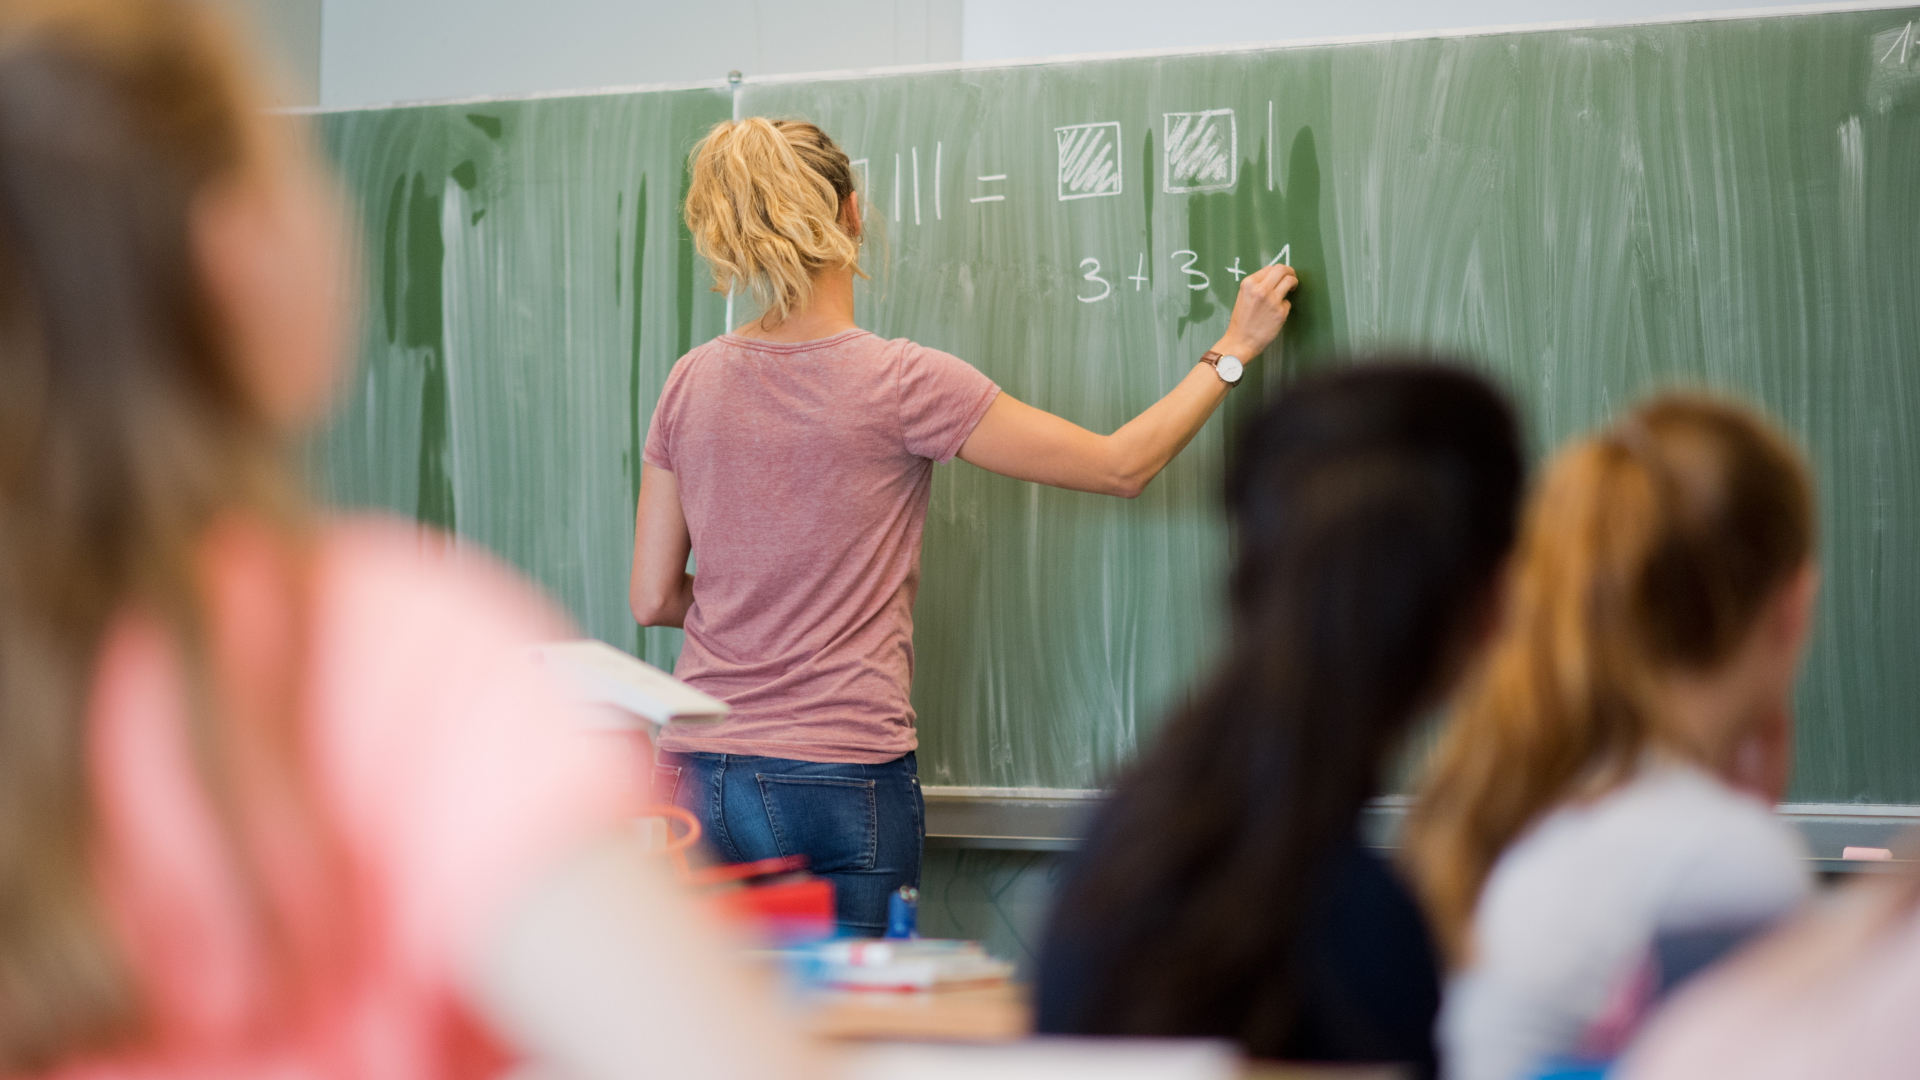 Kultusministerien: Bundesweit fehlen mehr als 14.000 Lehrkräfte